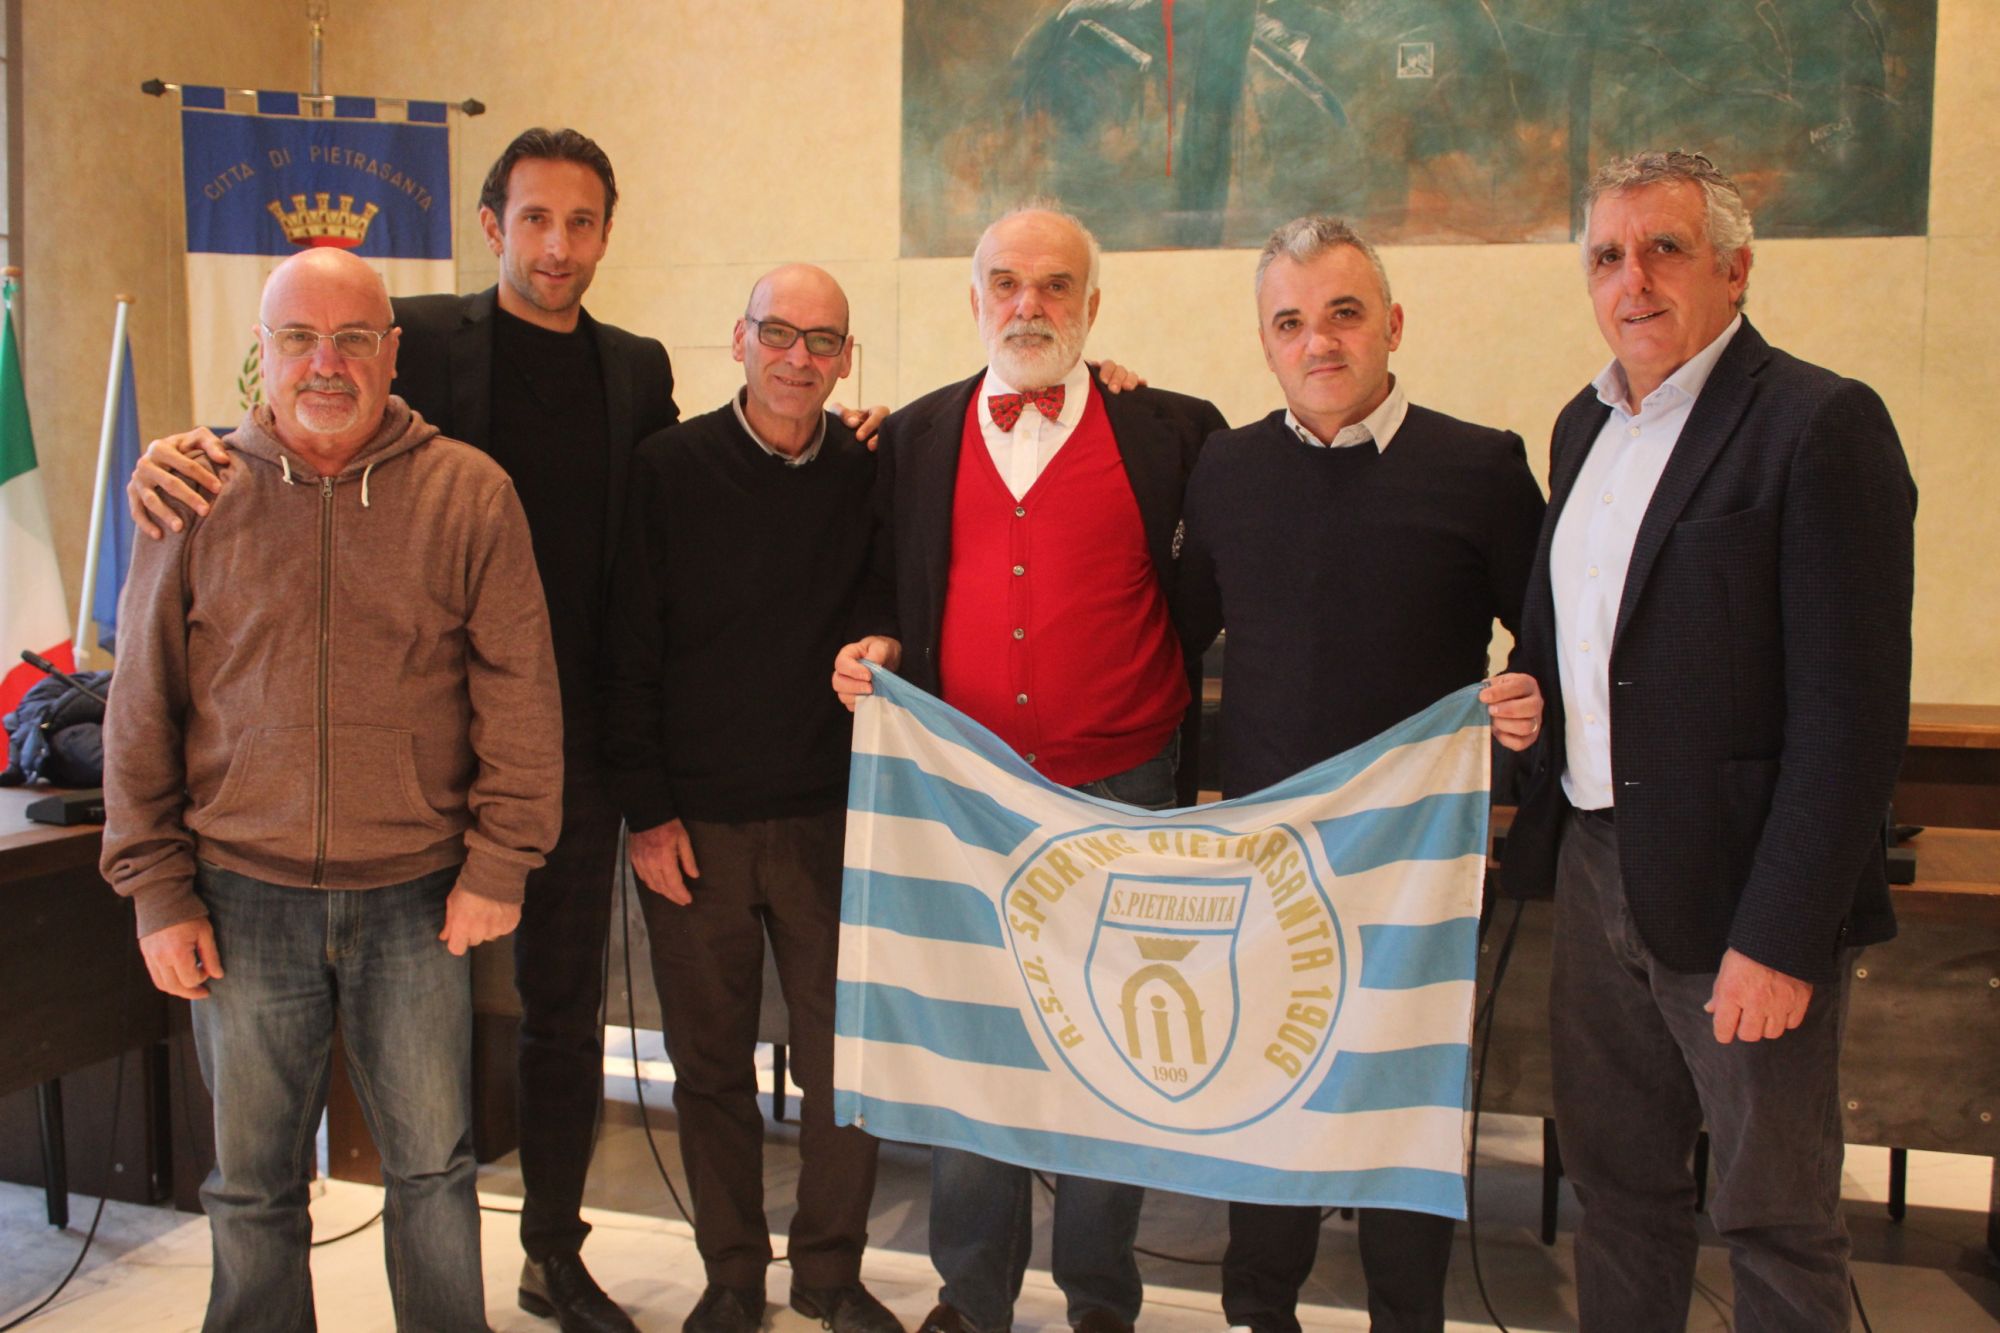 Calcio: anche Fiorentina, Empoli e Pisa al primo torneo di Natale a Pietrasanta